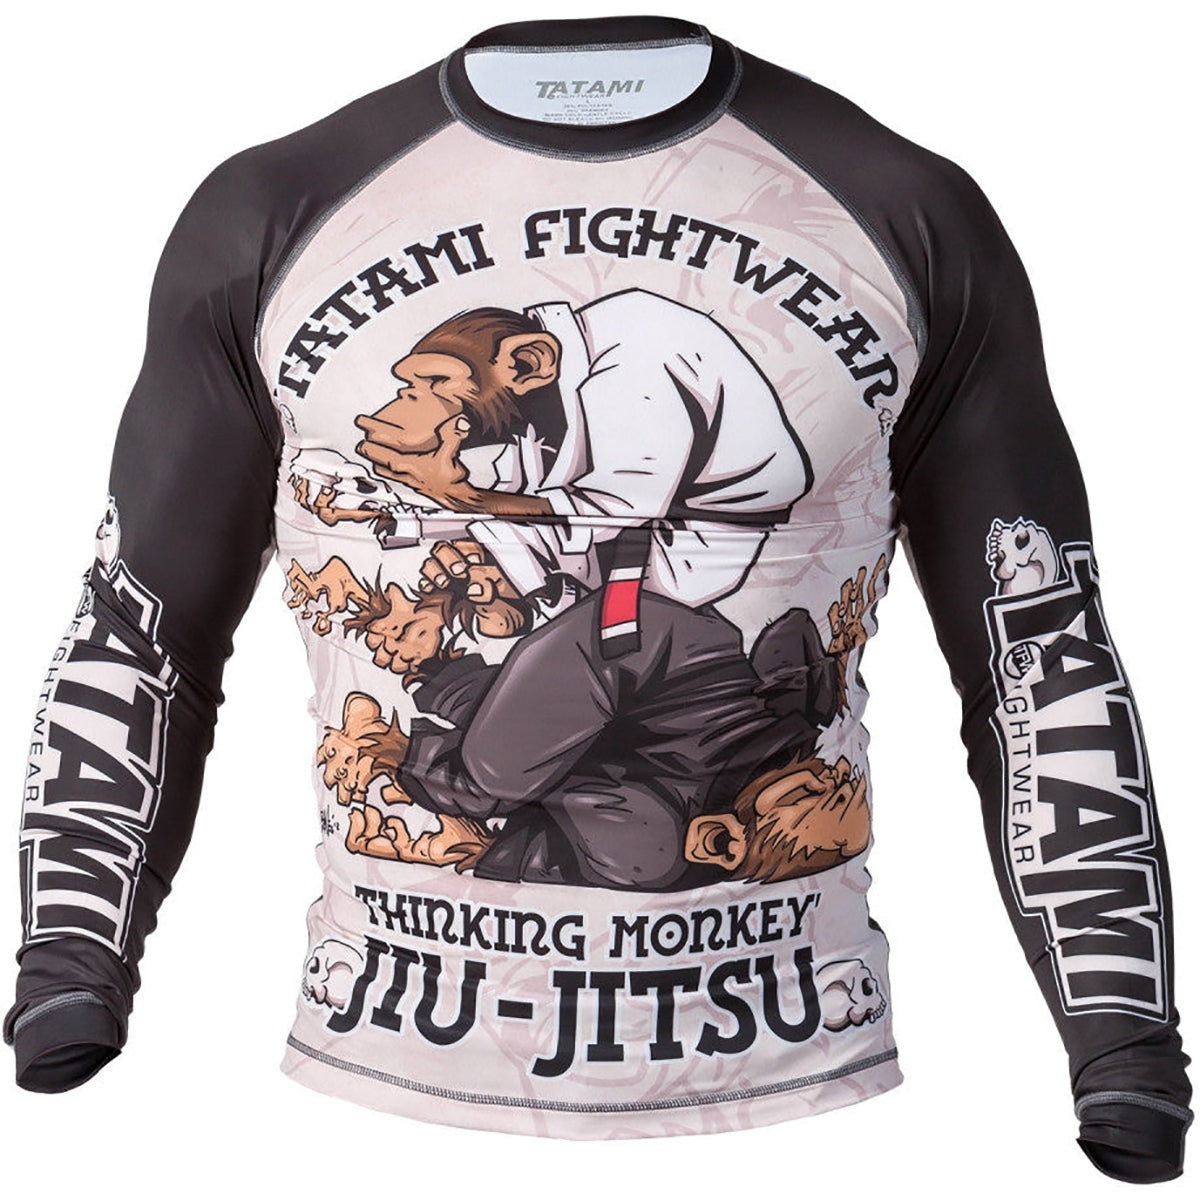 Tatami Fightwear Thinker Monkey Rashguard Tatami Fightwear